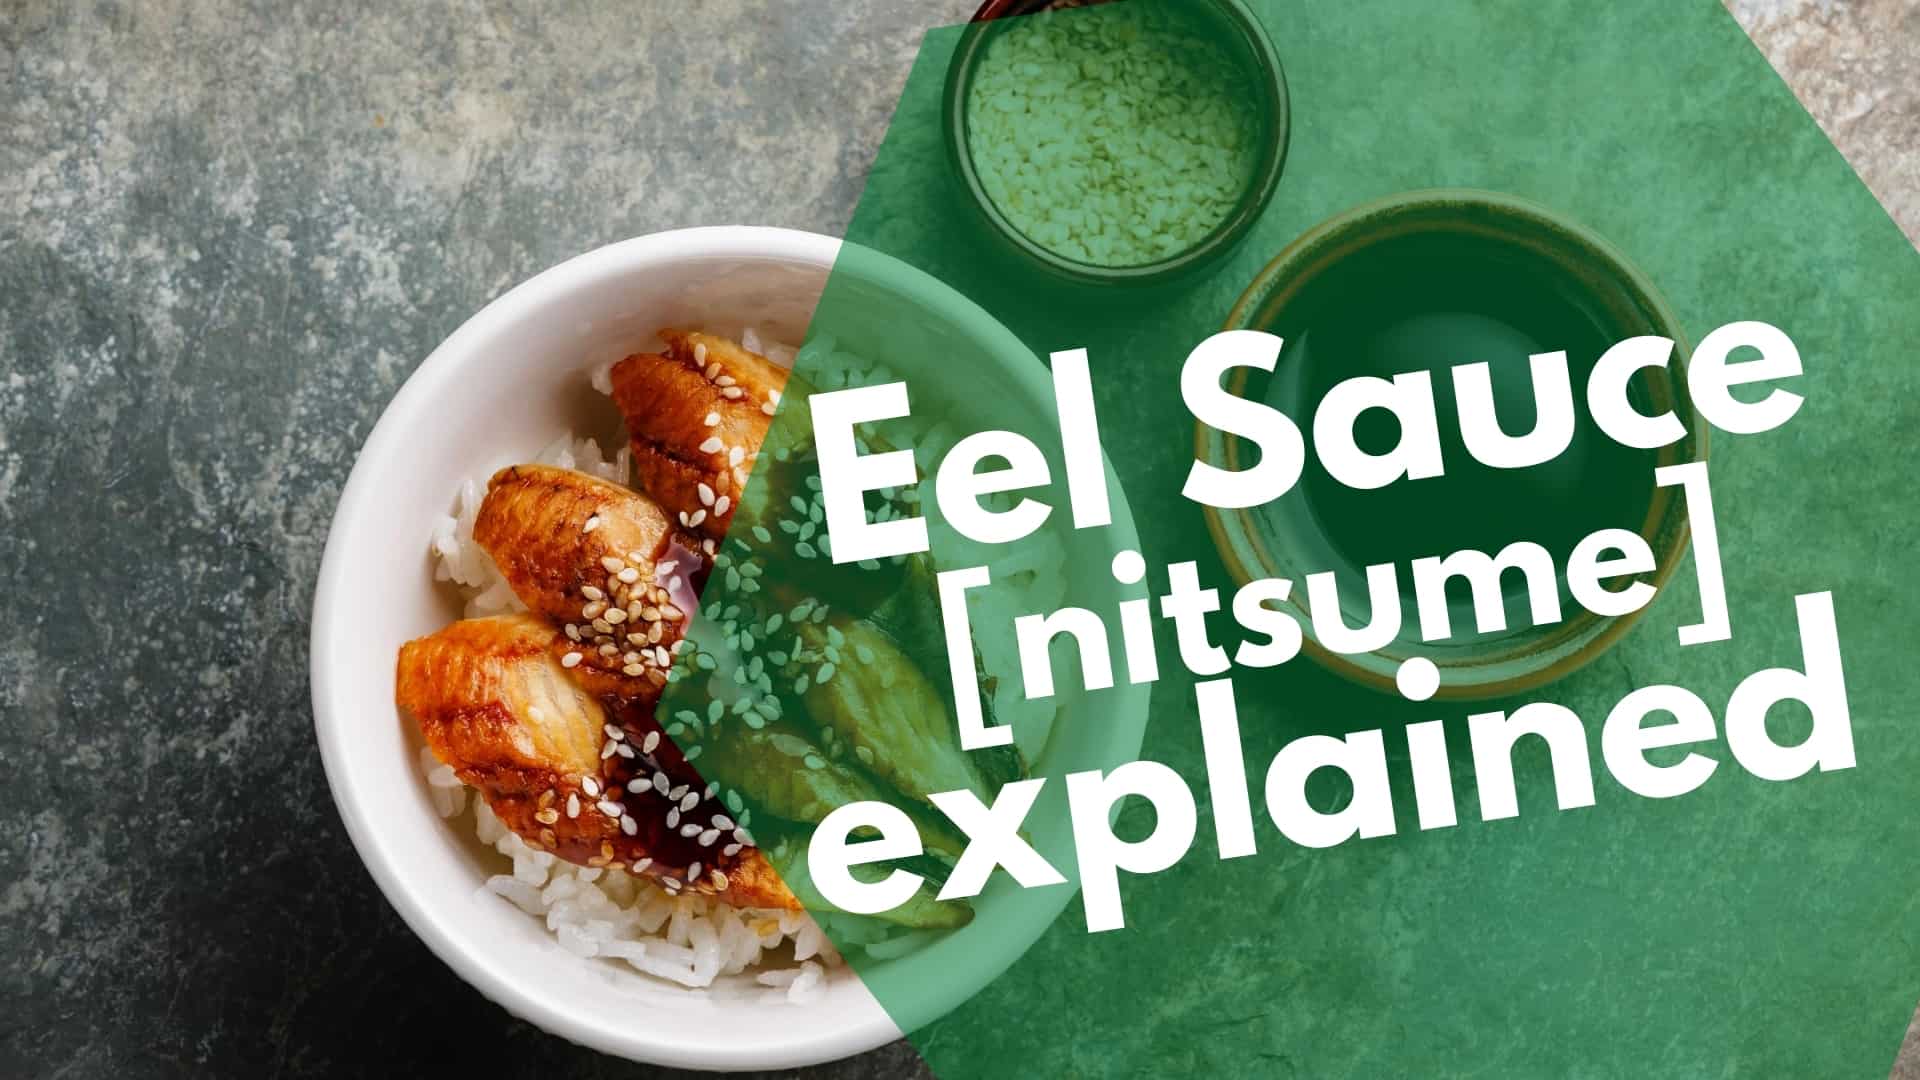 Explicación de la salsa de anguila nitsume